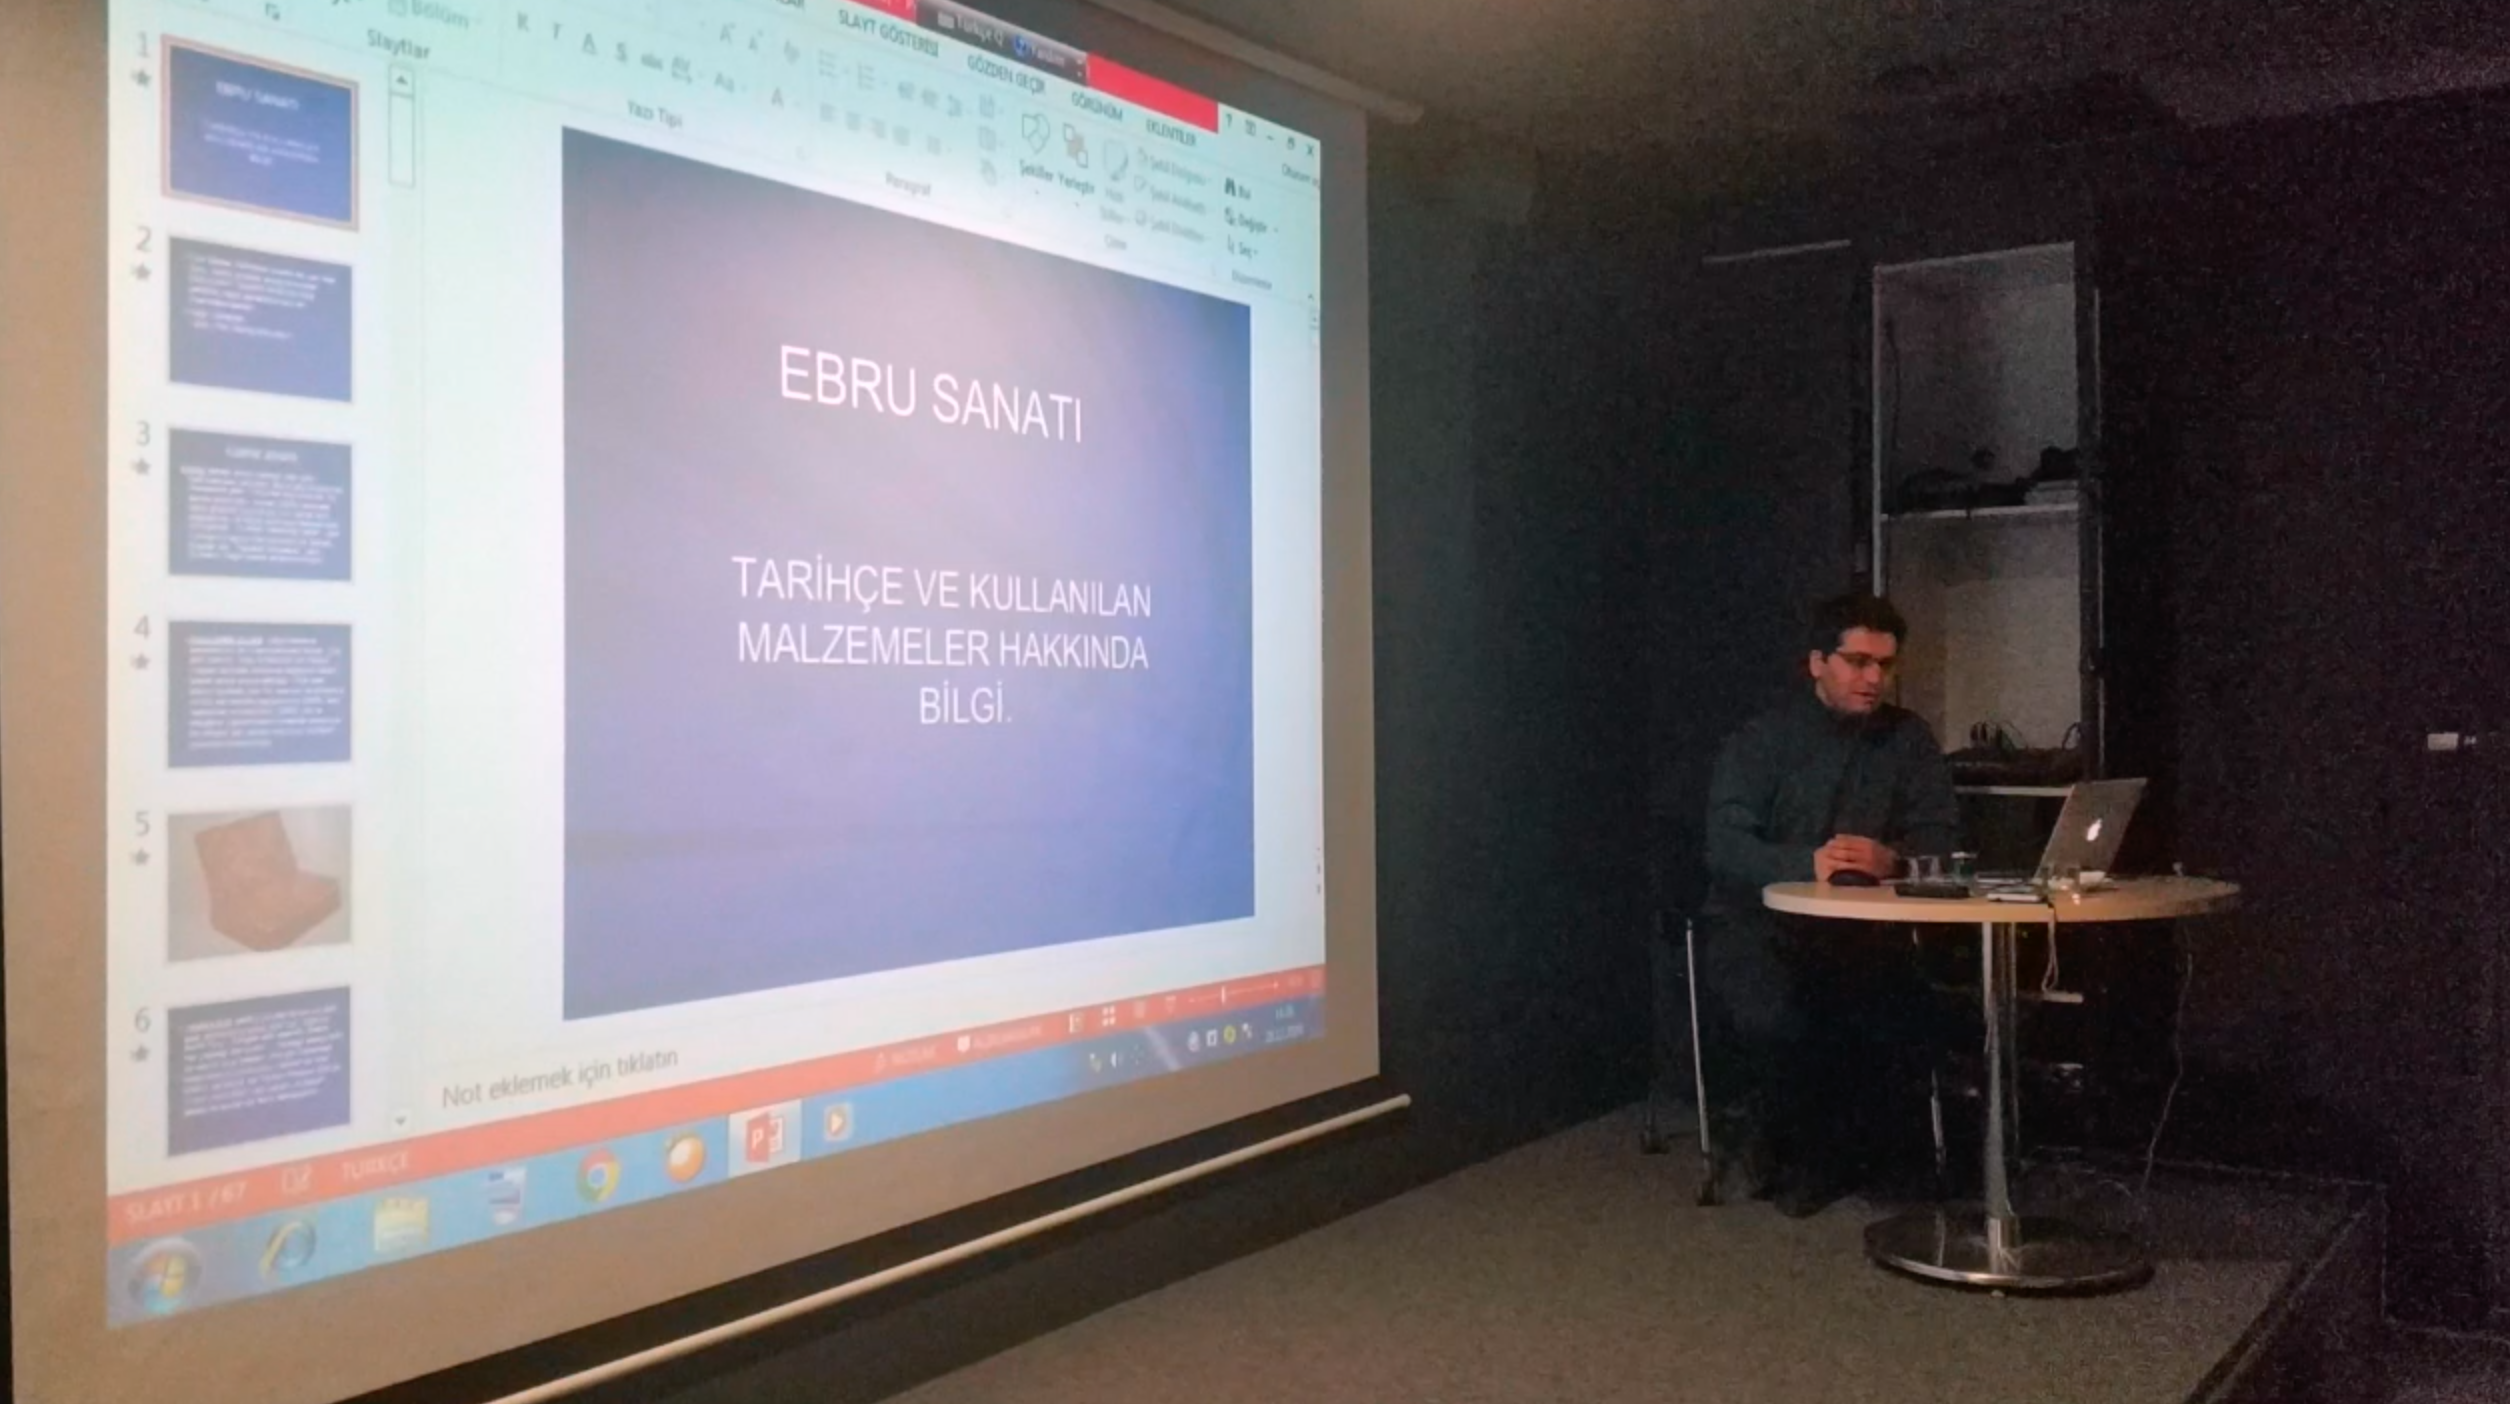 Timuçin Tanarslan Hocamız ile Sanat Teknolojisi Seminer Dersimiz_28.12.2019